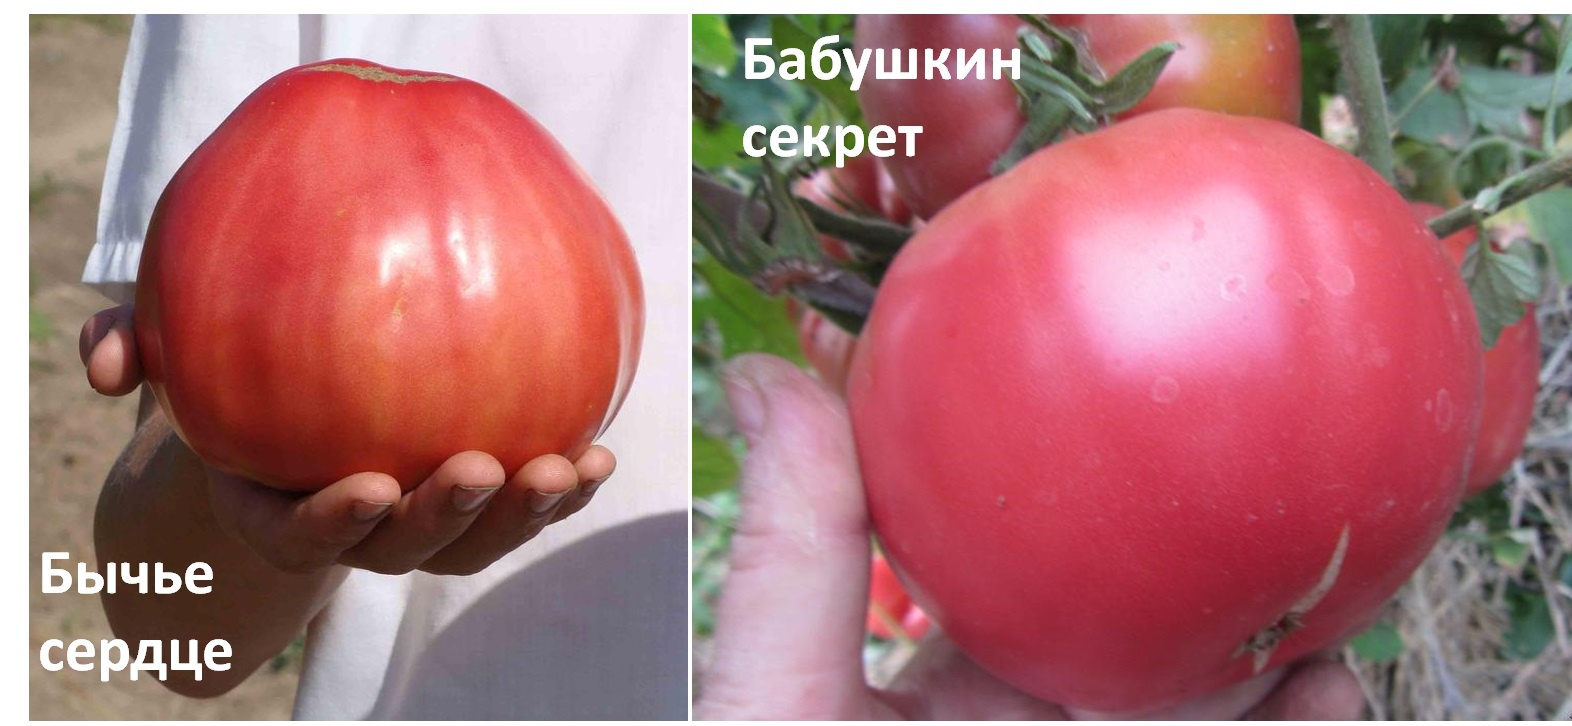 Огород: Сорта томатов для теплиц